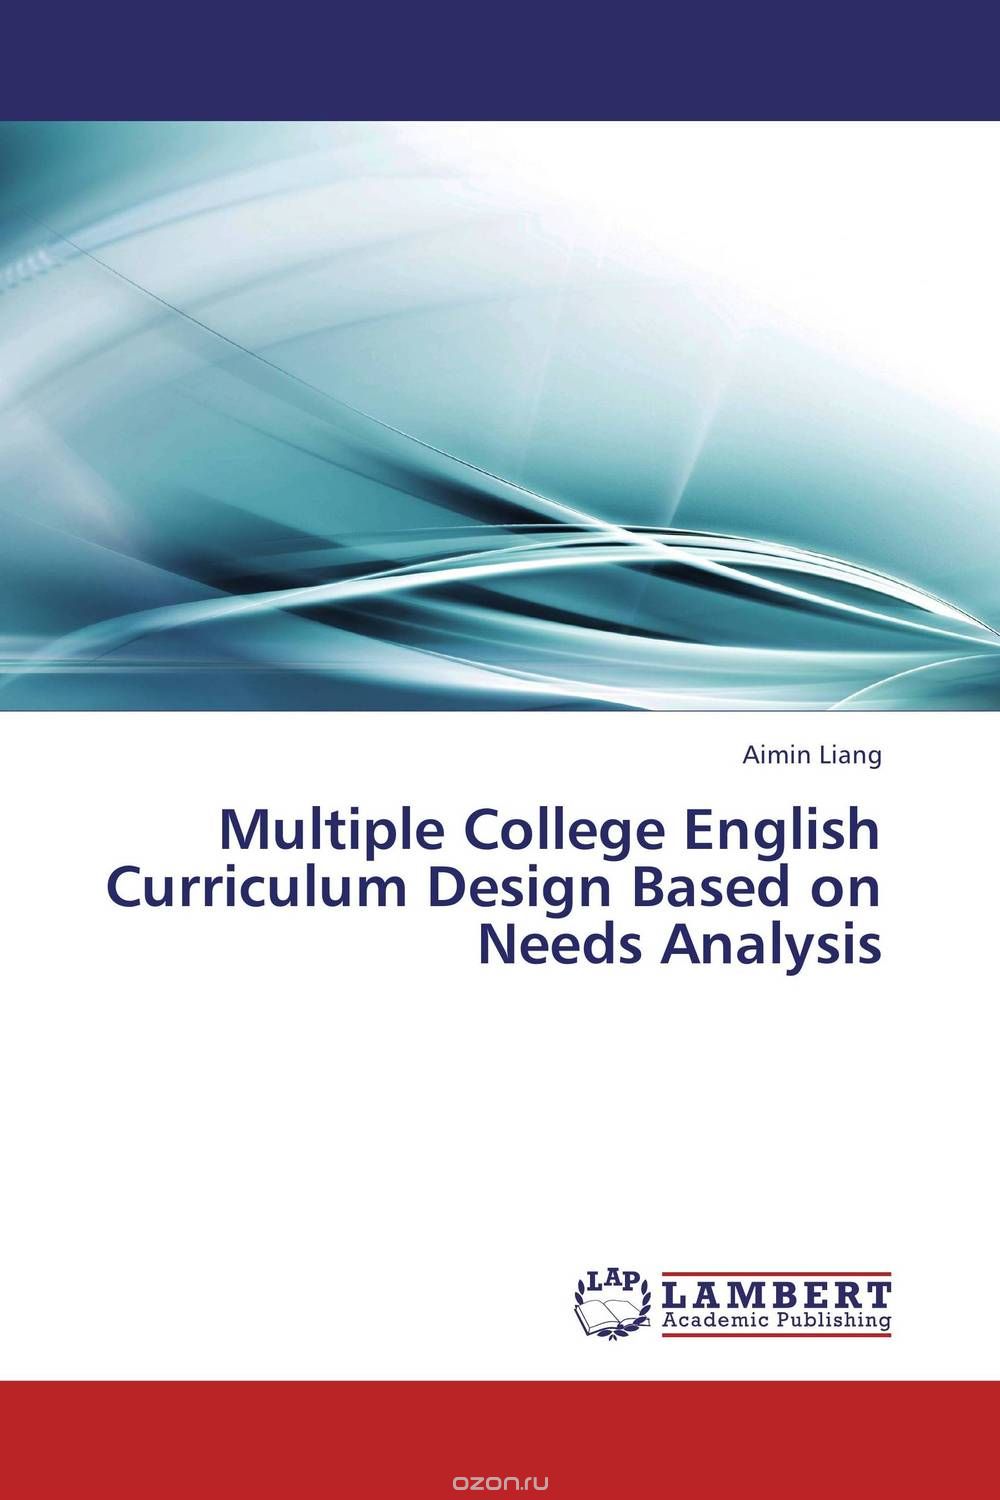 Скачать книгу "Multiple College English Curriculum Design Based on Needs Analysis"